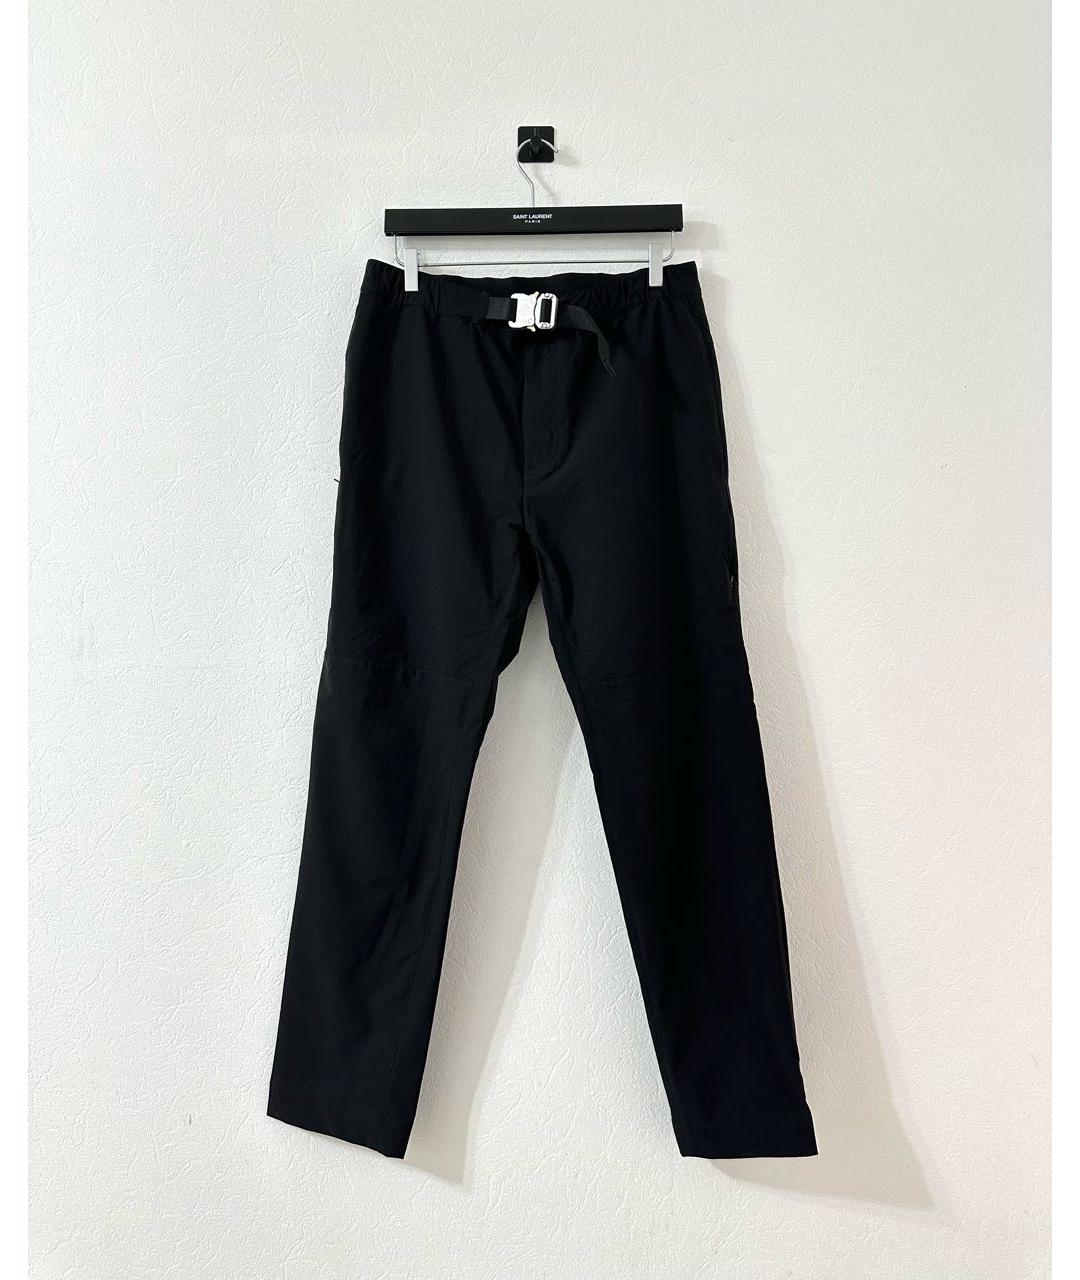 1017 ALYX 9SM Черные полиэстеровые спортивные брюки и шорты, фото 2